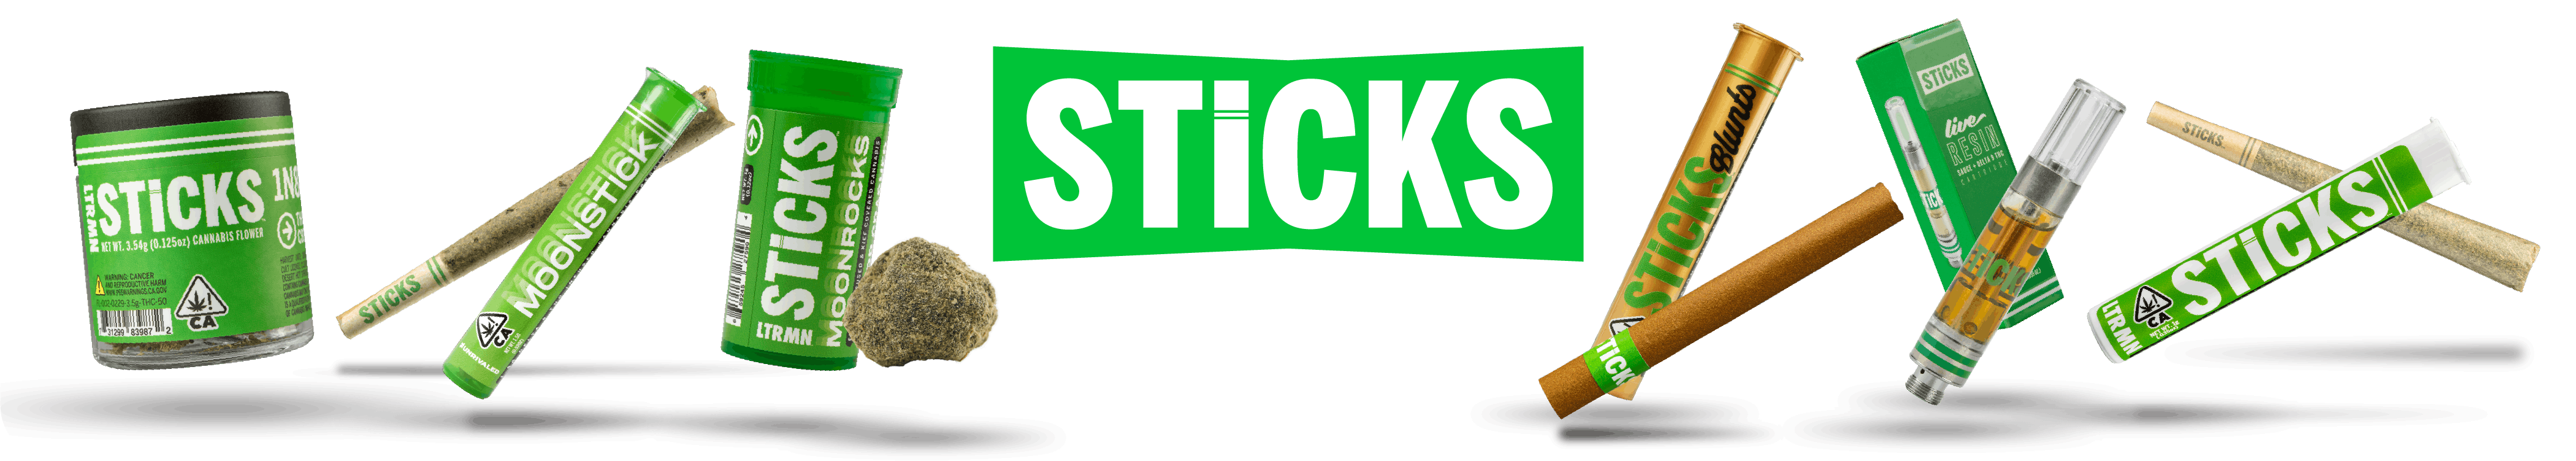 STiCKS banner